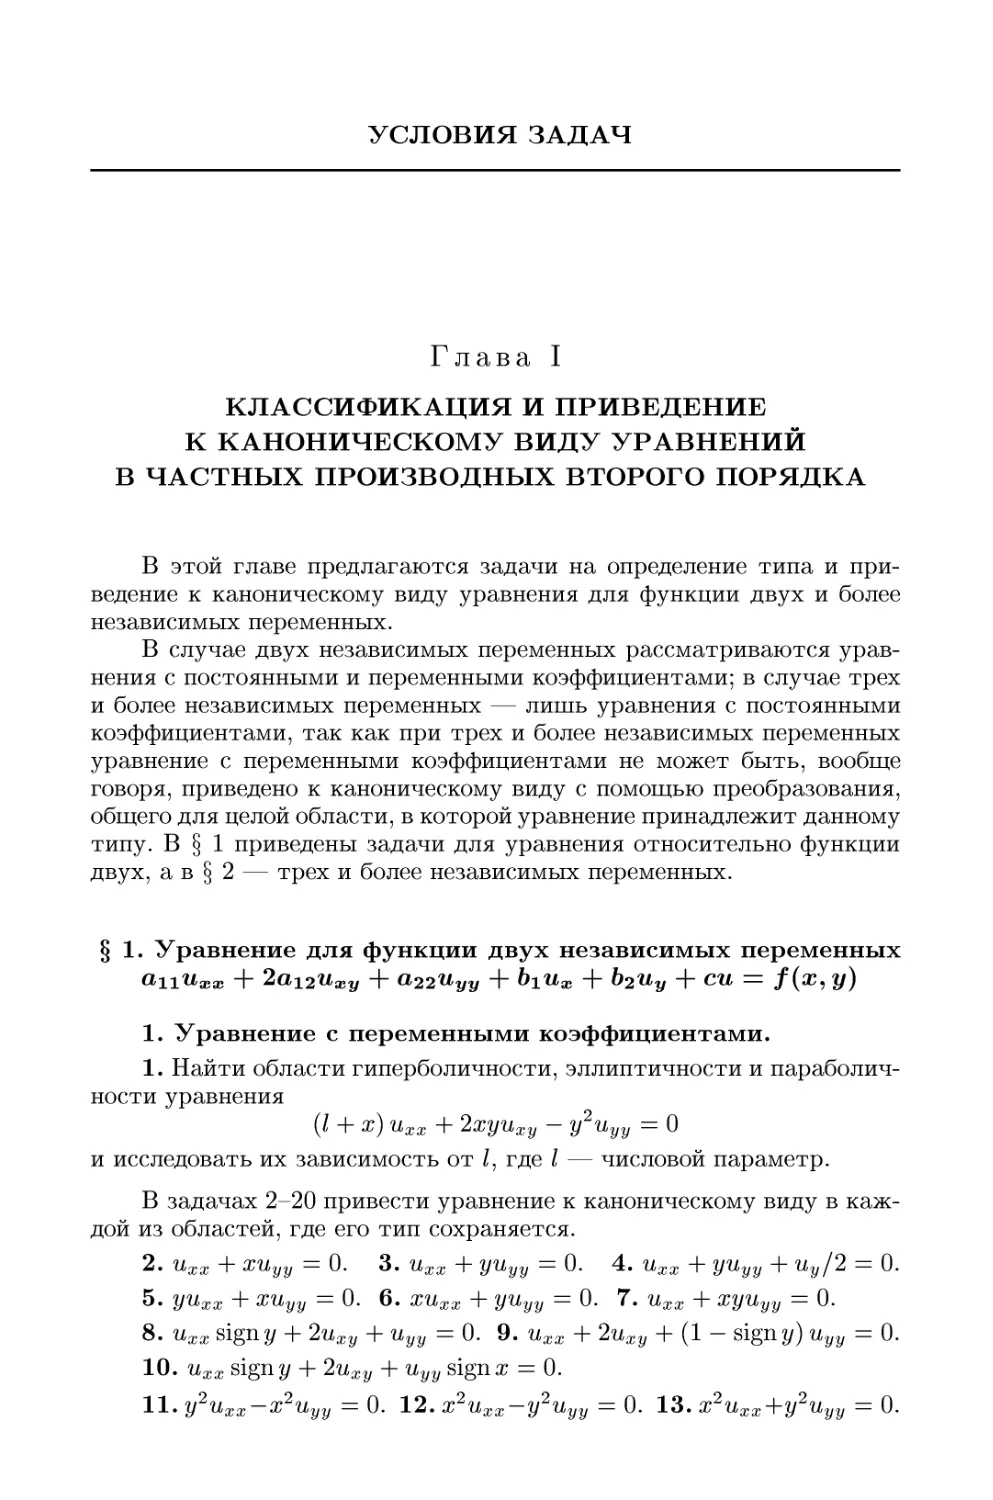 Глава I. Классификация и приведение к каноническому виду уравнений в частных производных второго порядка
1. Уравнение с переменными коэффициентами